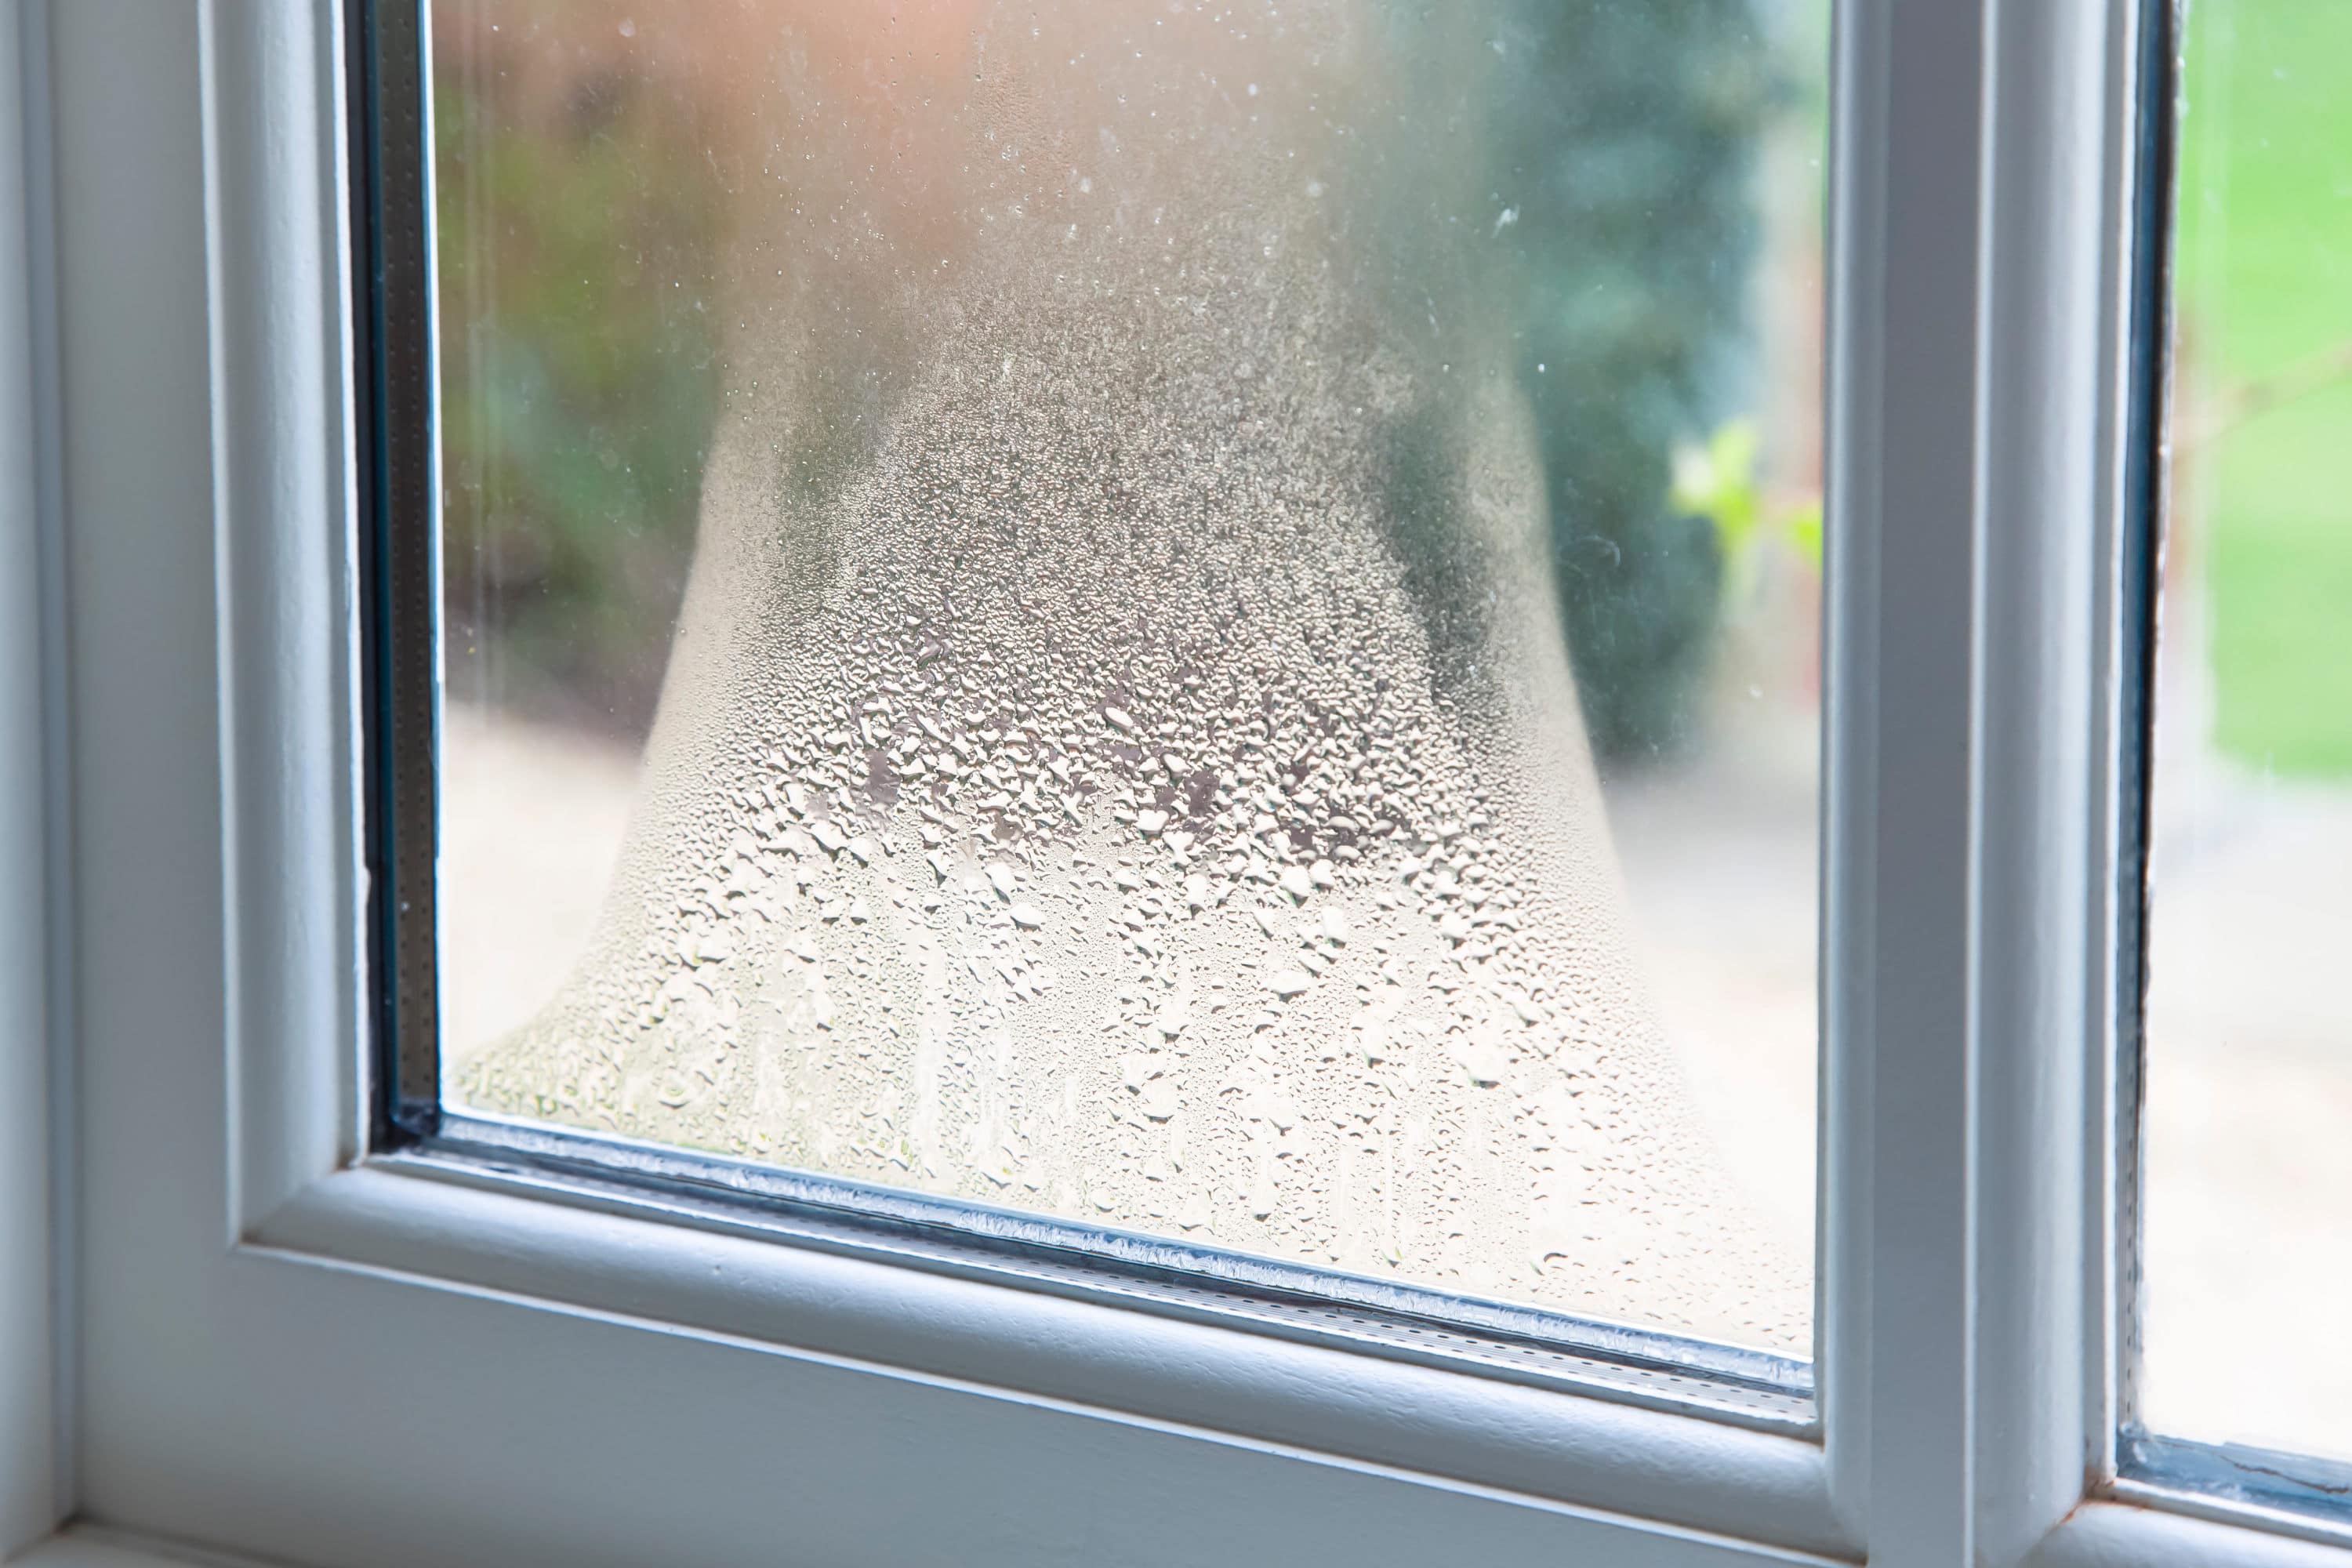 Comment arrêter la condensation sur les fenêtres